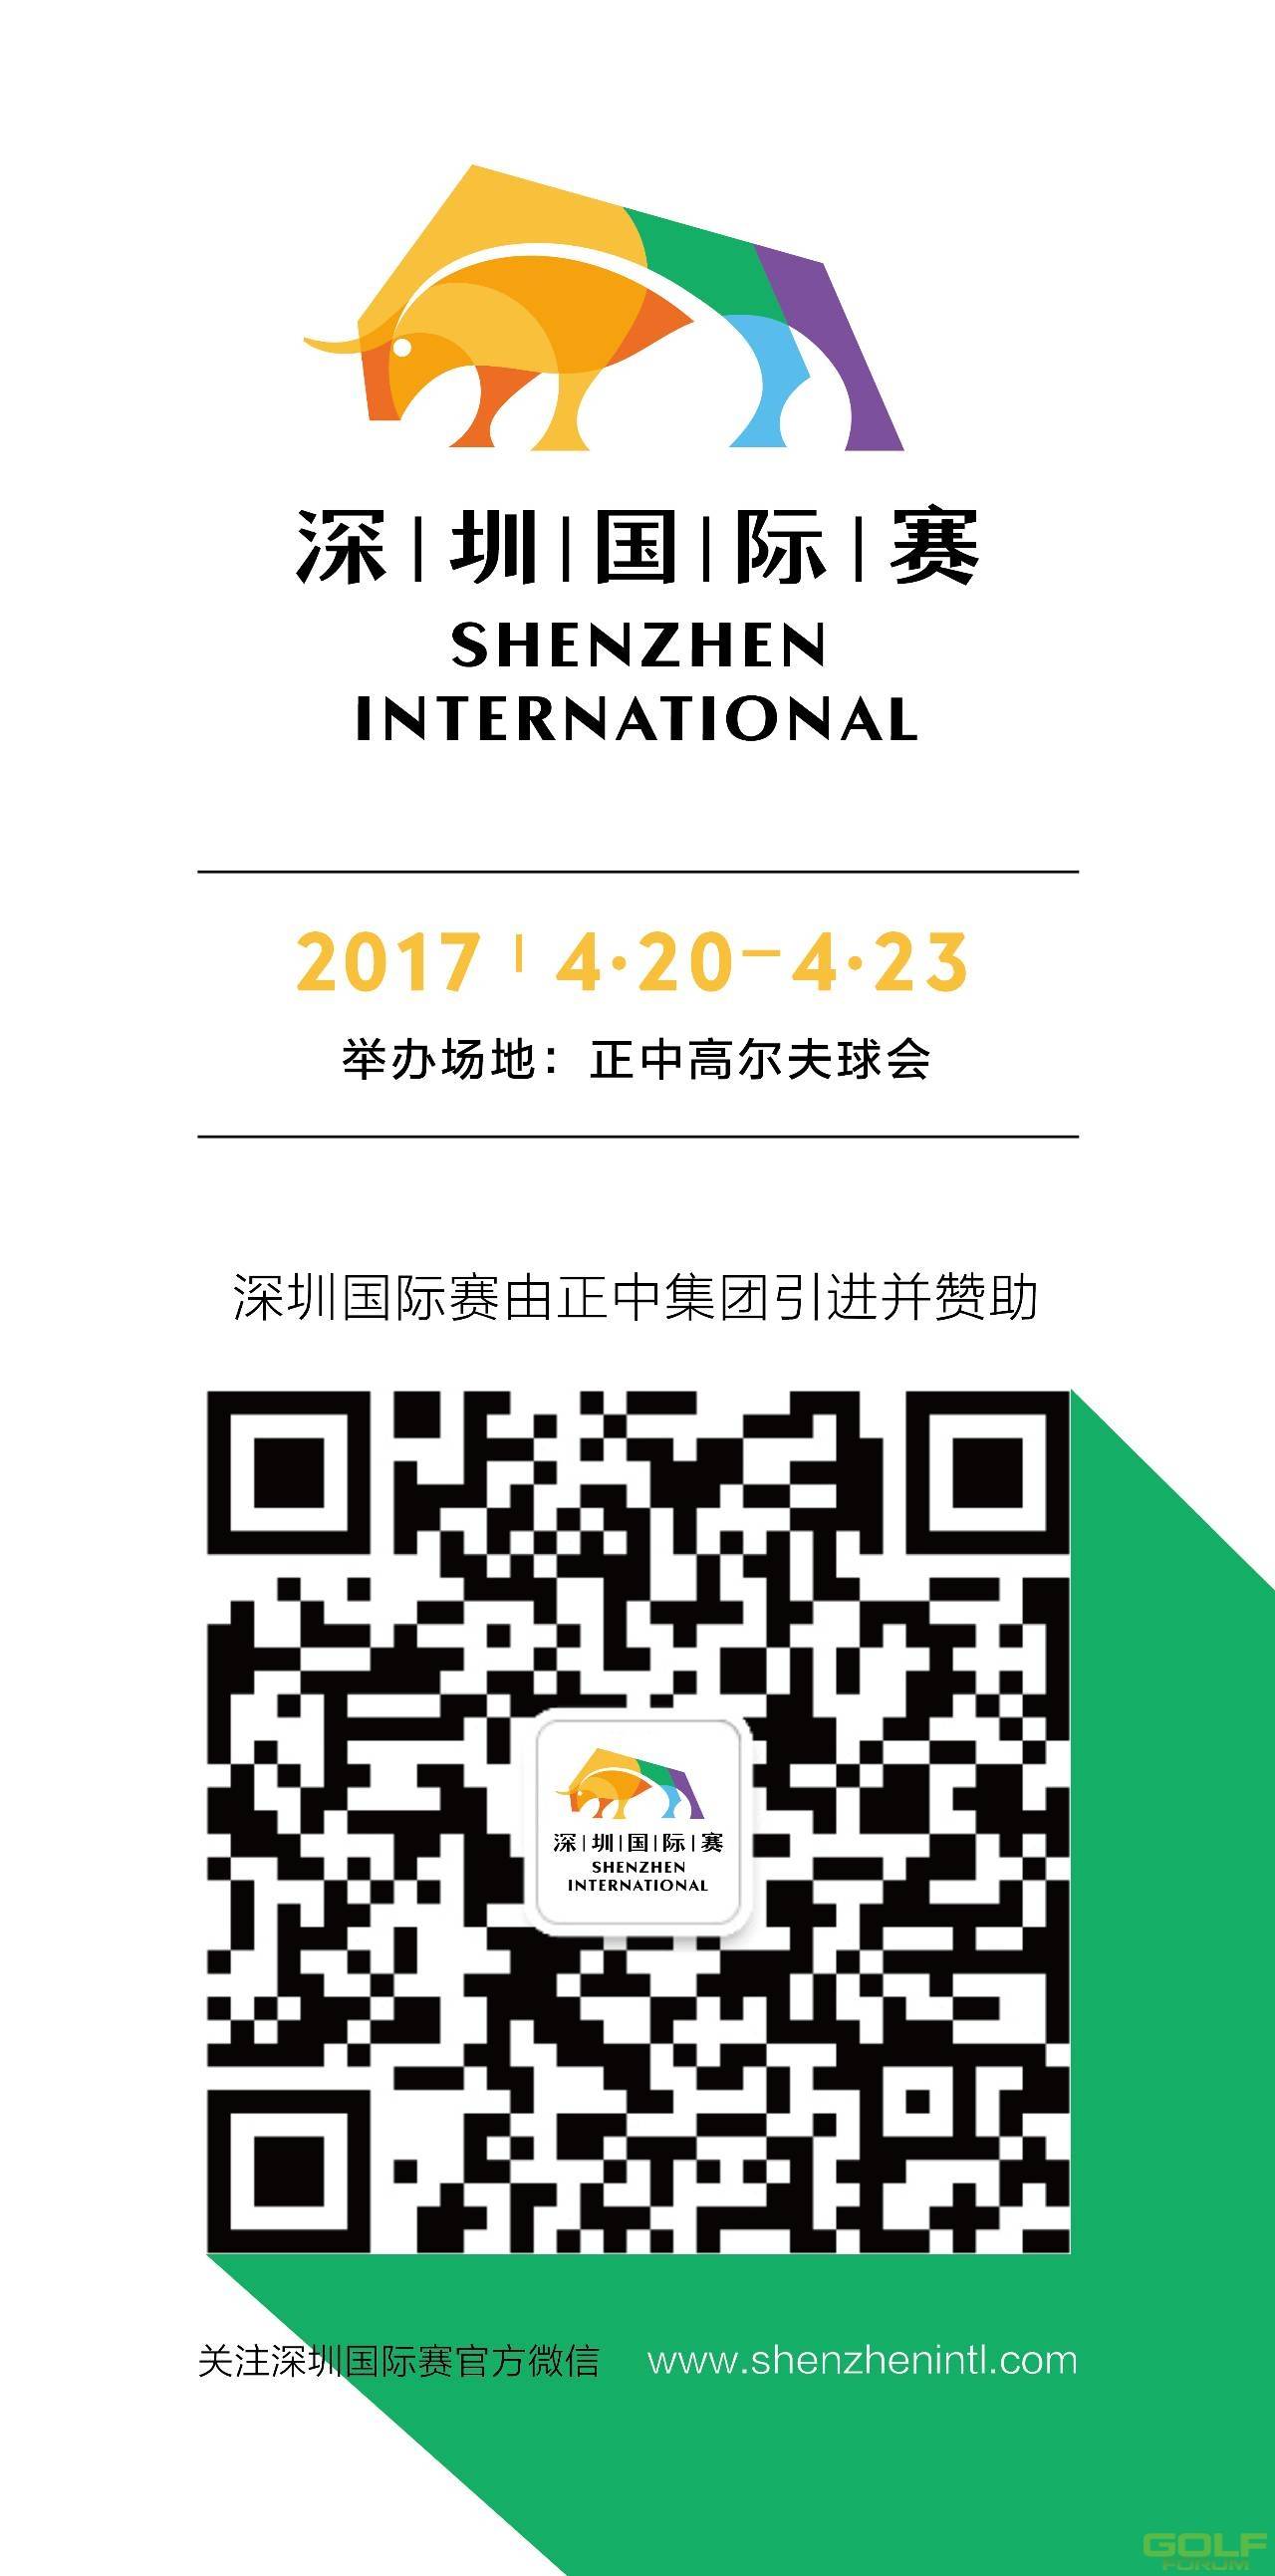 有奖互动丨分享你和深圳国际赛的美好相遇